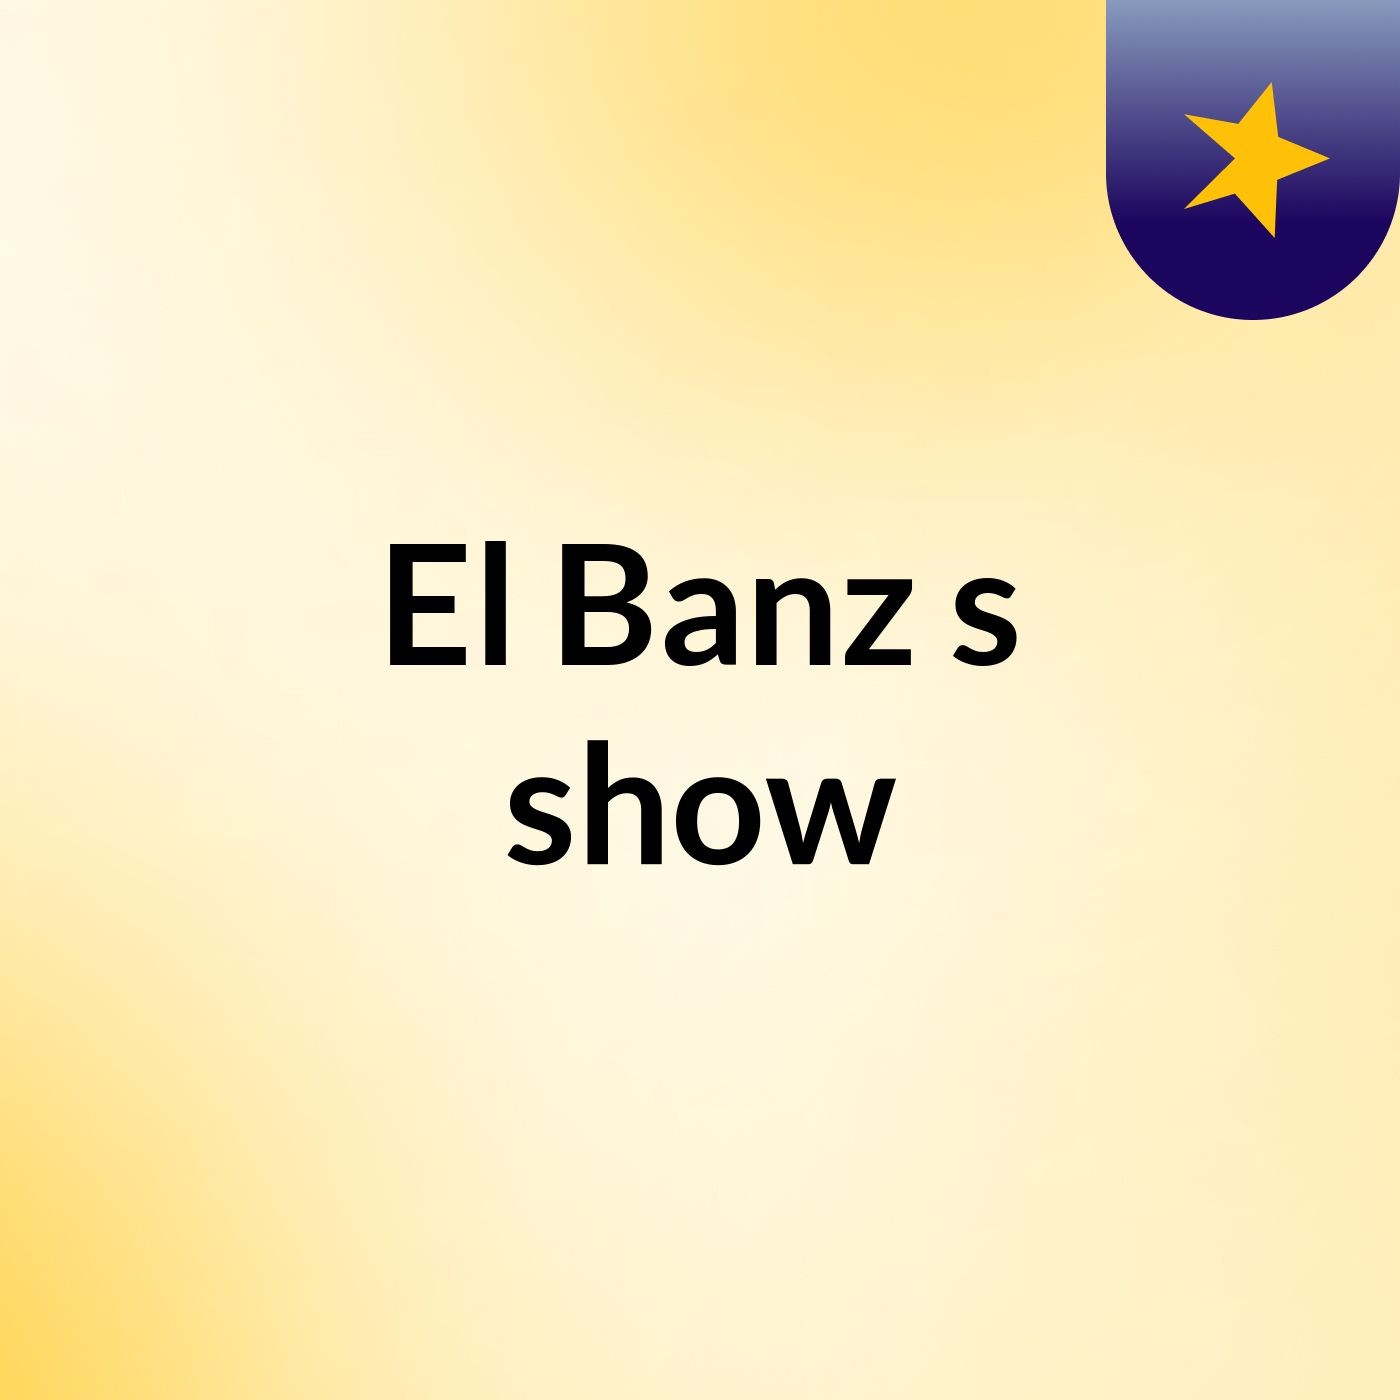 El Banz's show